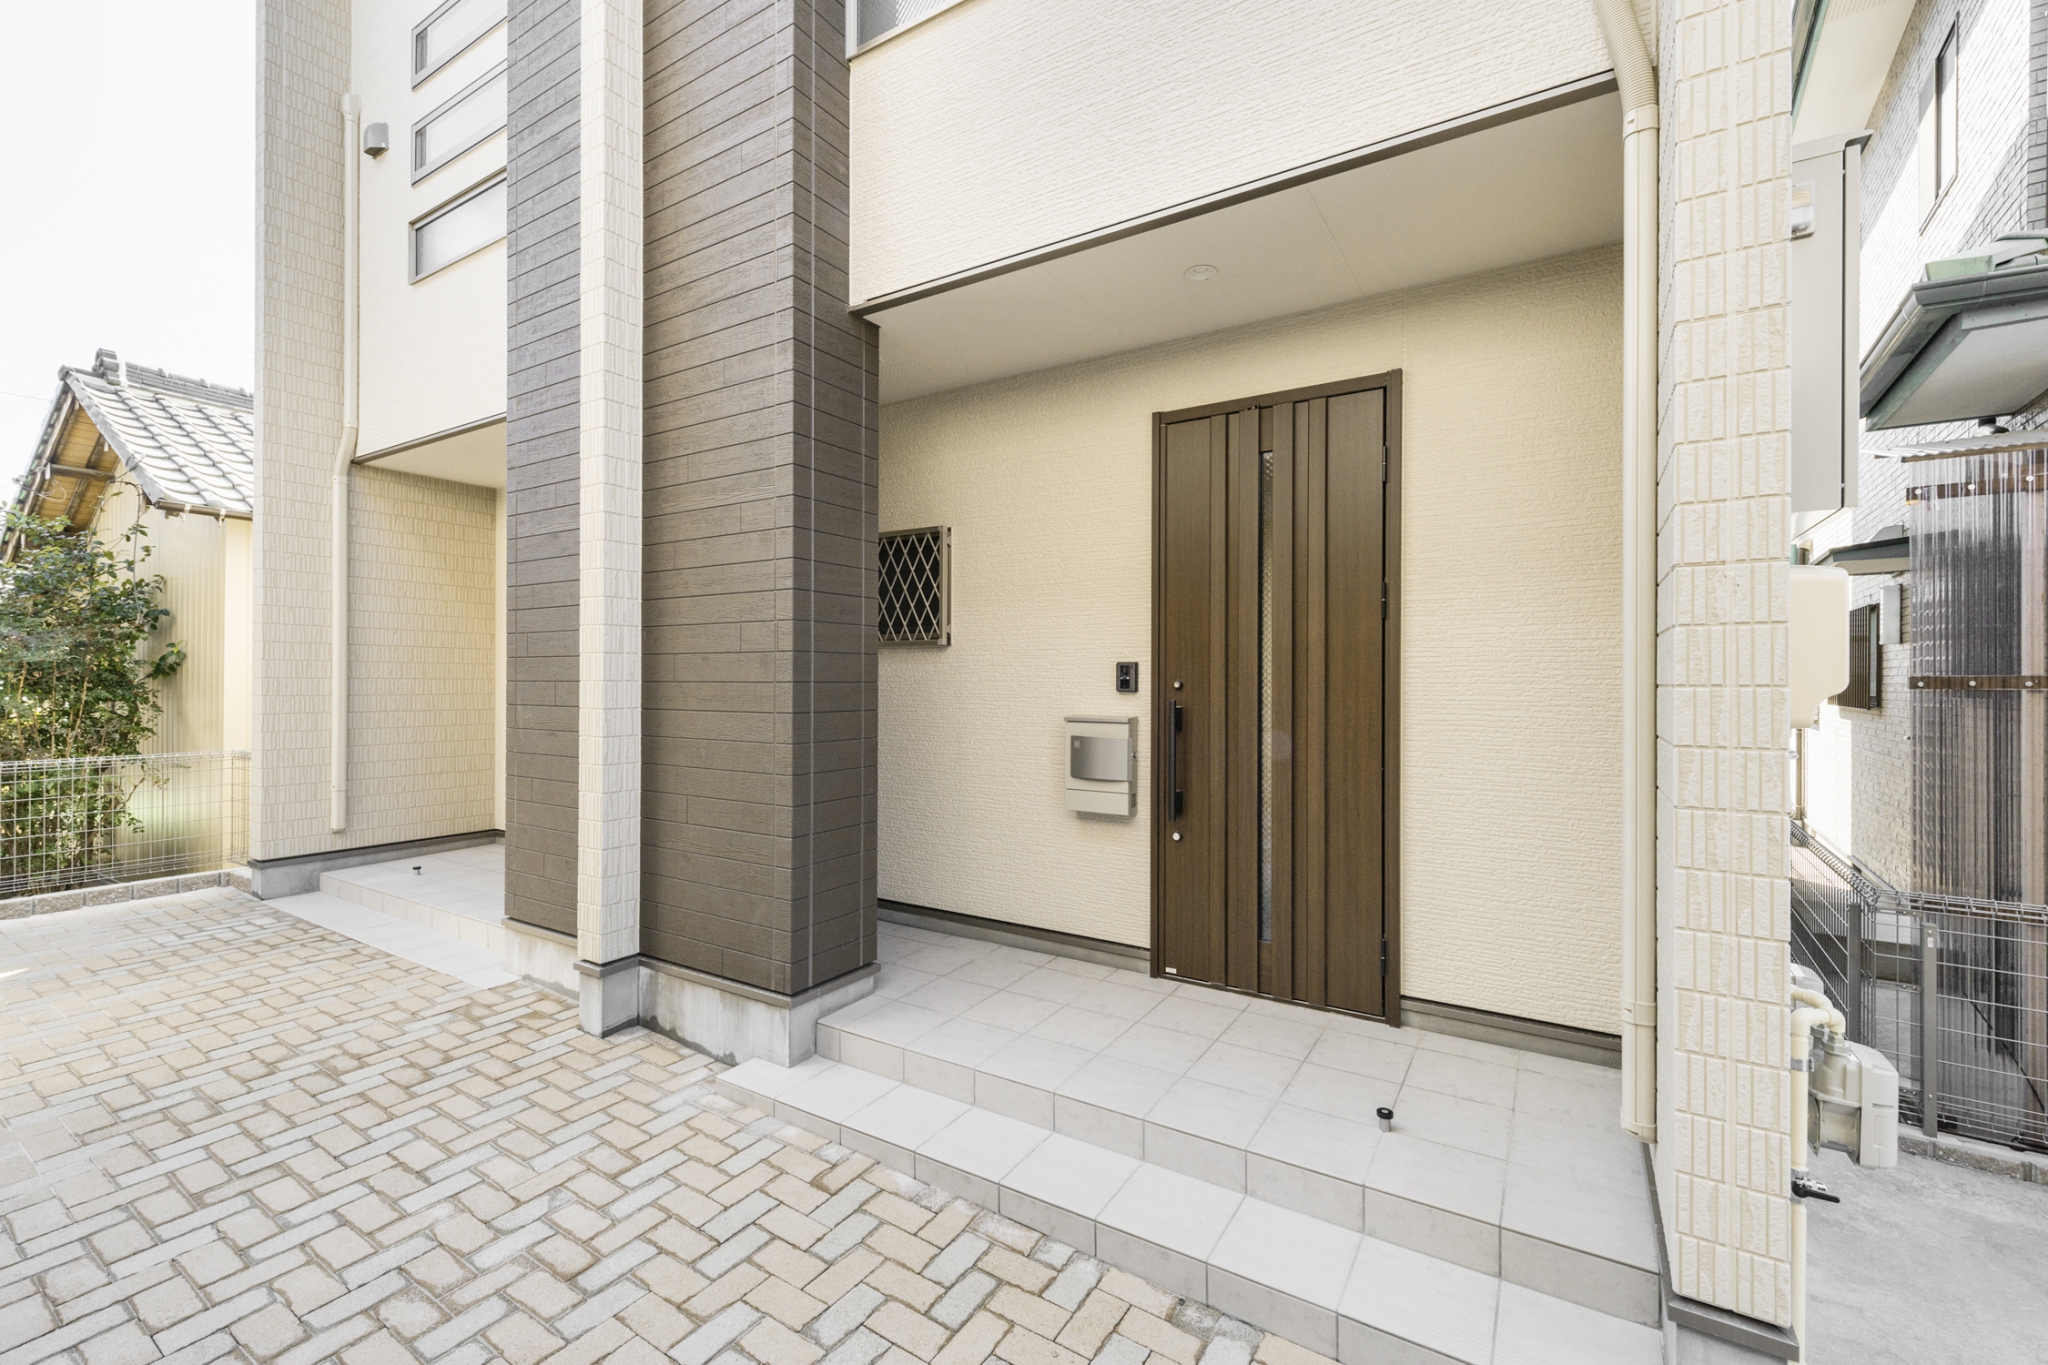 名古屋市中川区の戸建賃貸住宅のスリットの入った玄関ドア